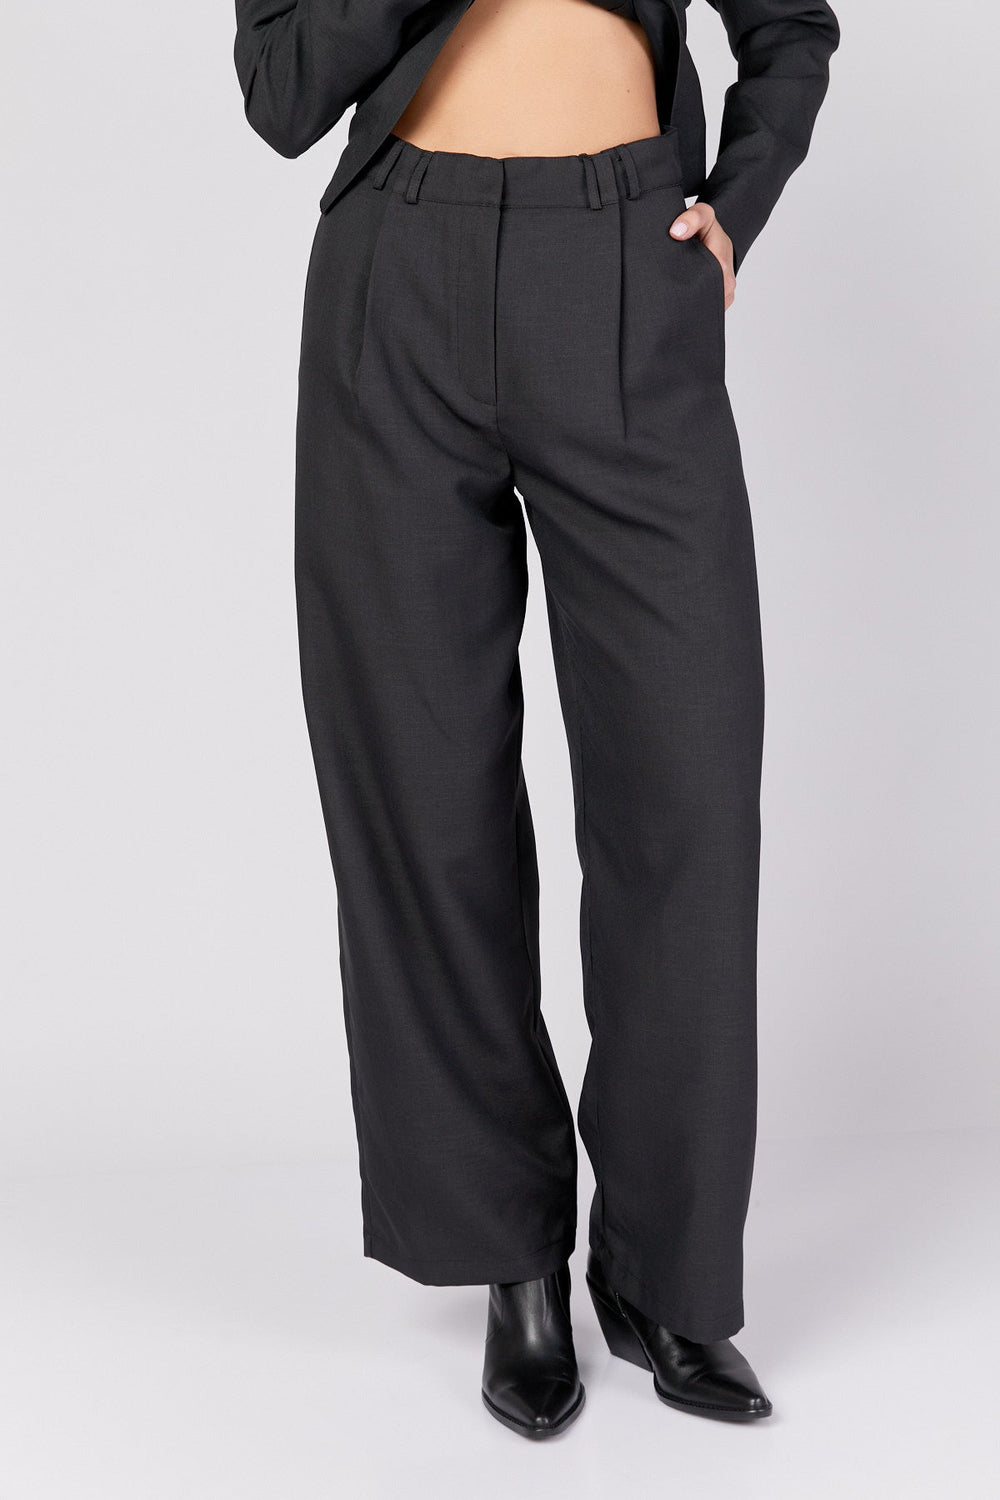 מכנסי ג'ונסון בצבע שחור - Dana Sidi